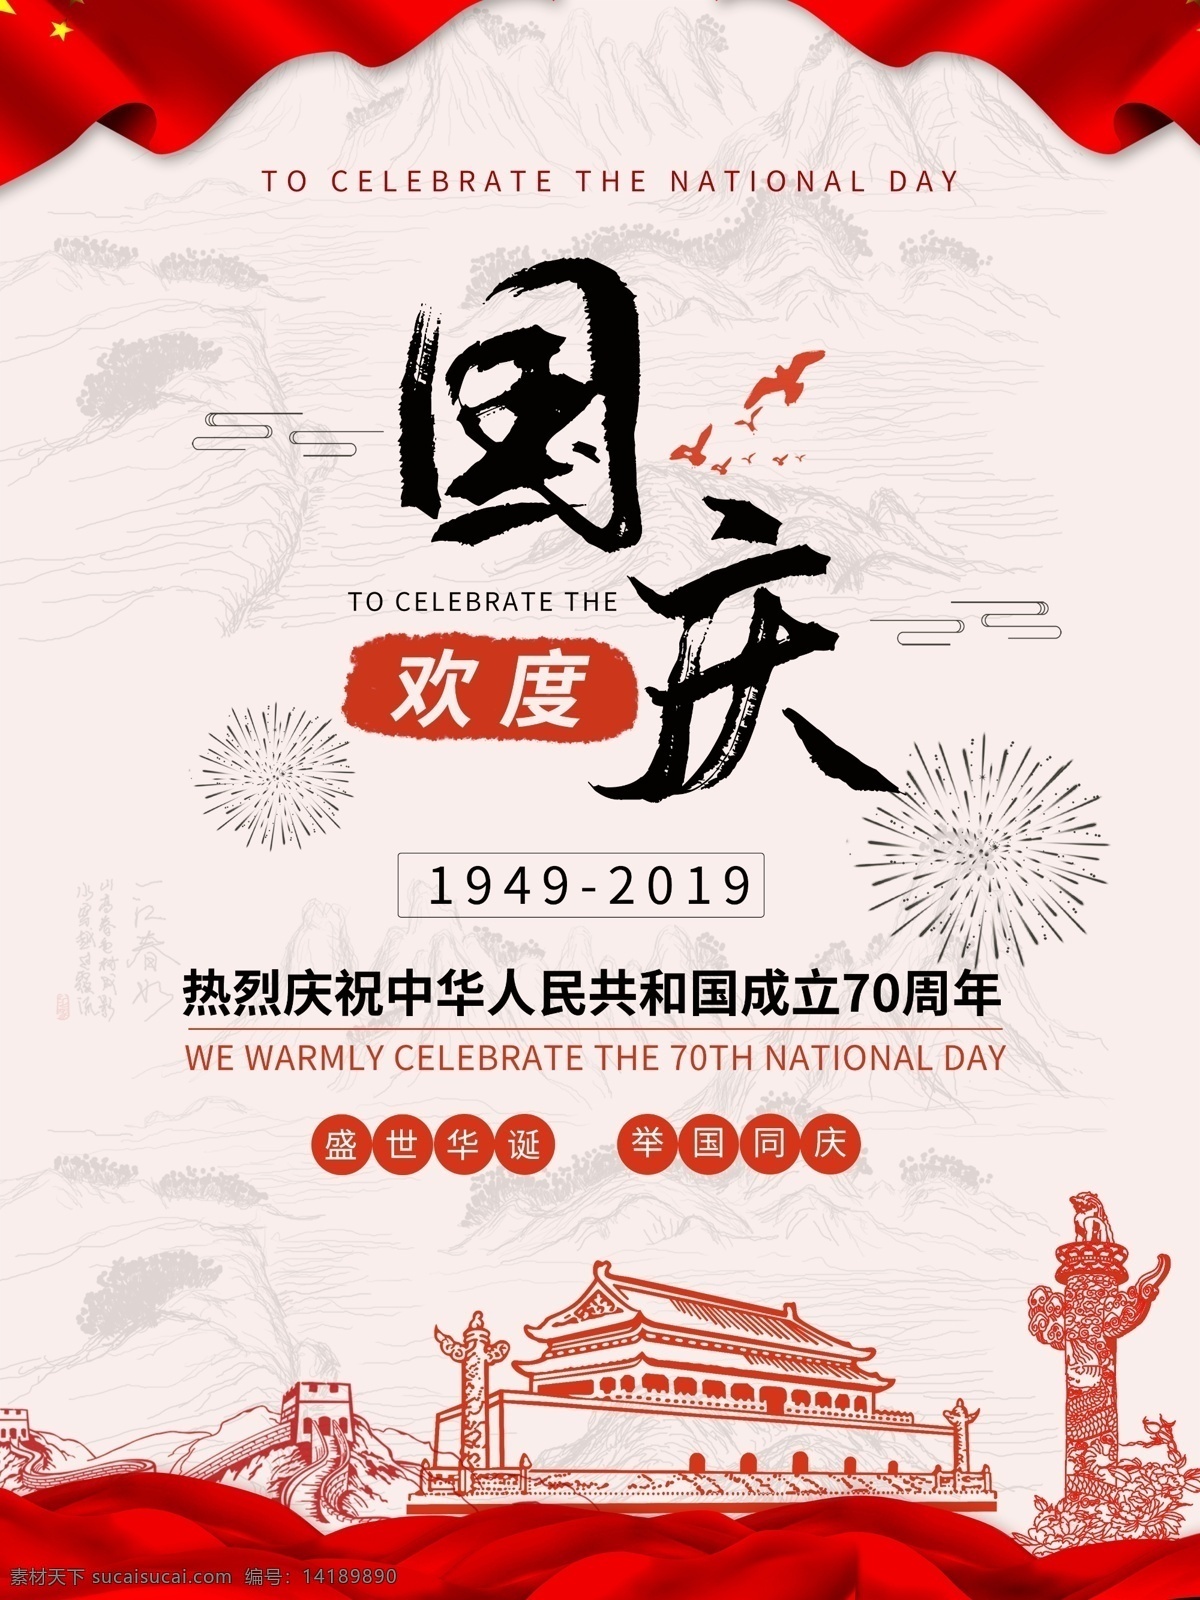 国庆节 国庆 10月1 欢度国庆 70华诞 中国成立 成立 欢度 节日